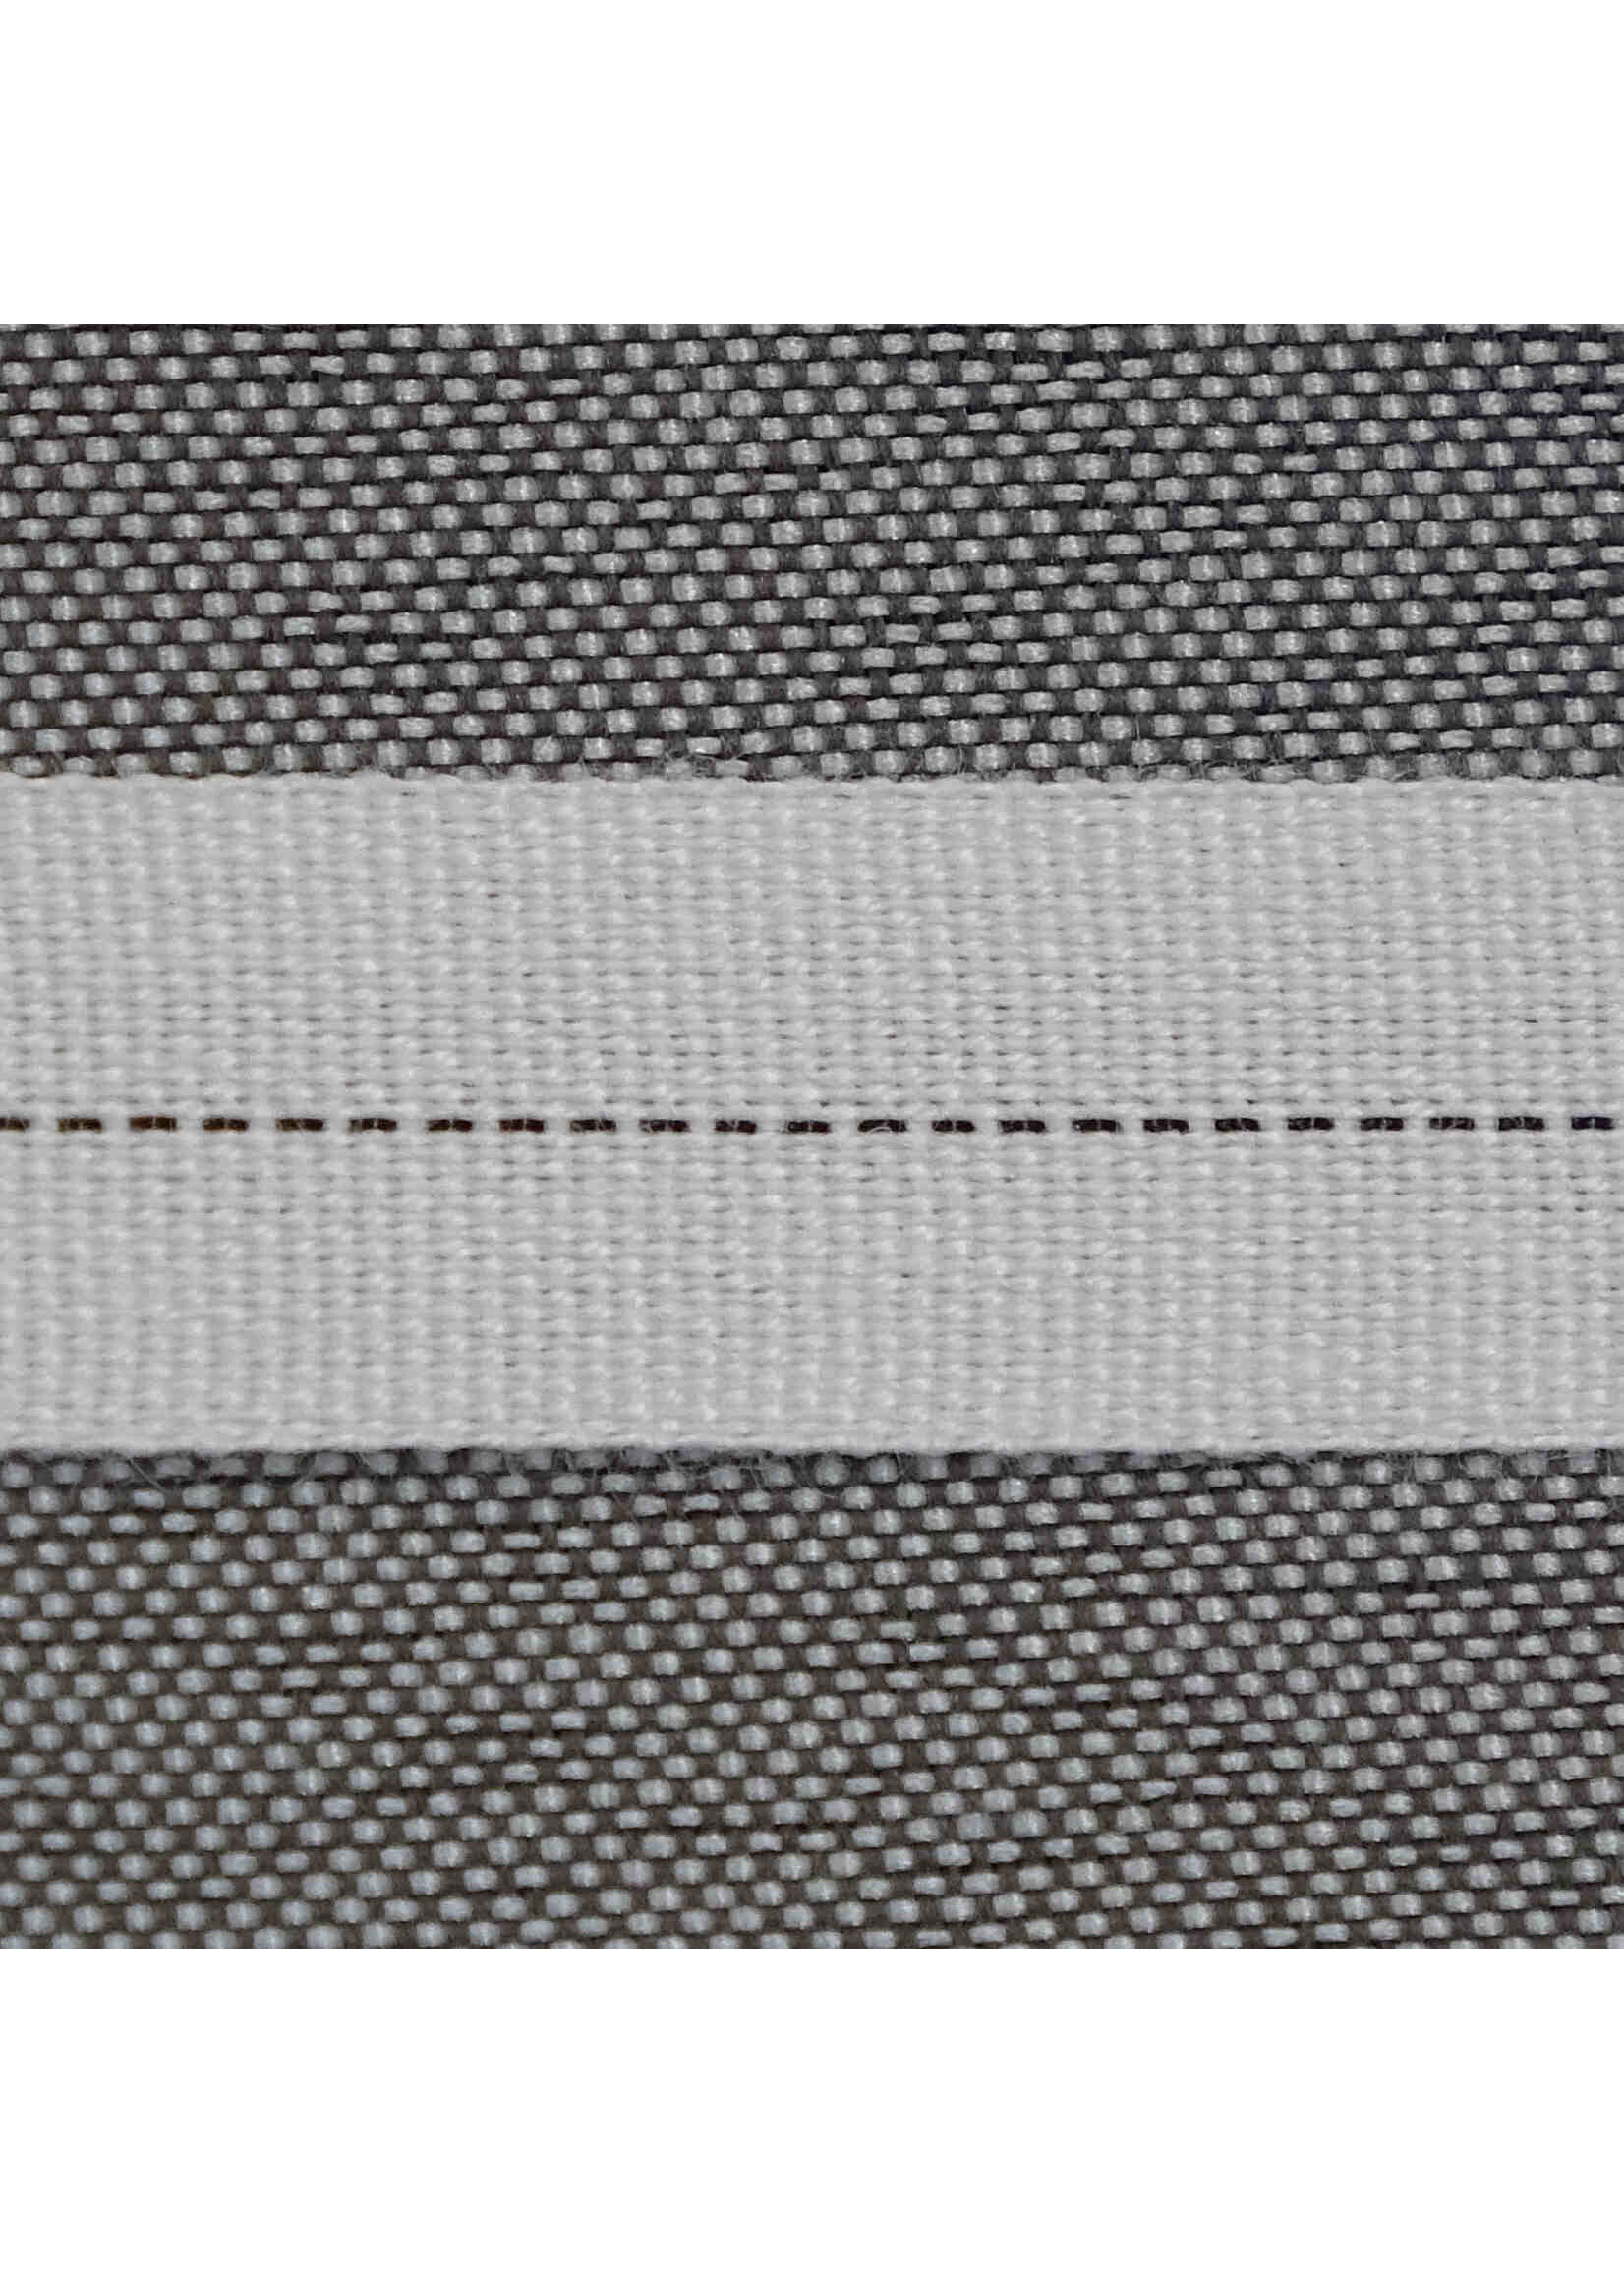 Ruban de calandre en aramide/polyester, résistant à des températures allant jusqu'à 210°C